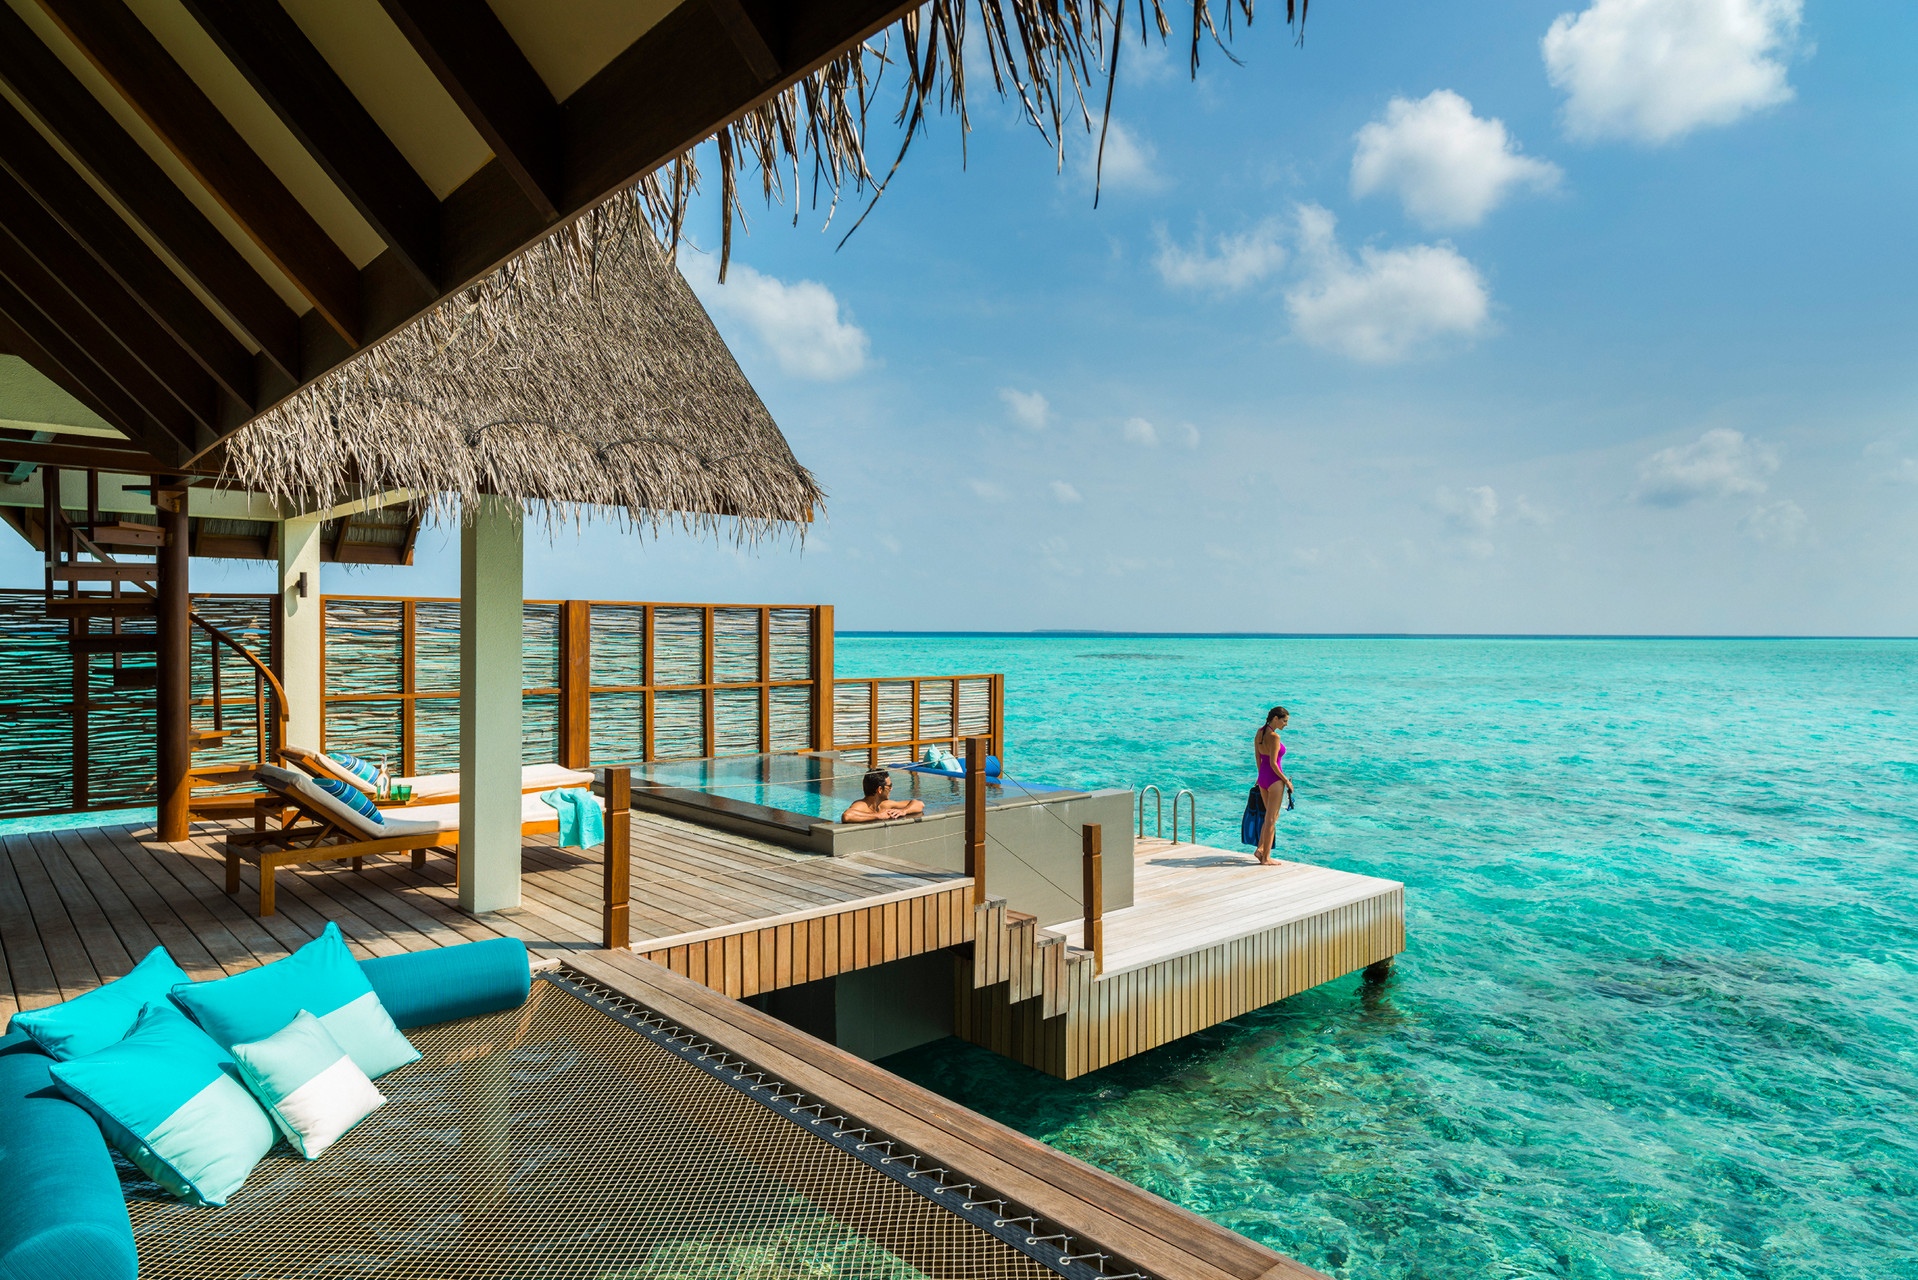 马尔代夫宁静岛W Retreat Resort & Spa Maldives – 爱岛人 海岛旅行专家